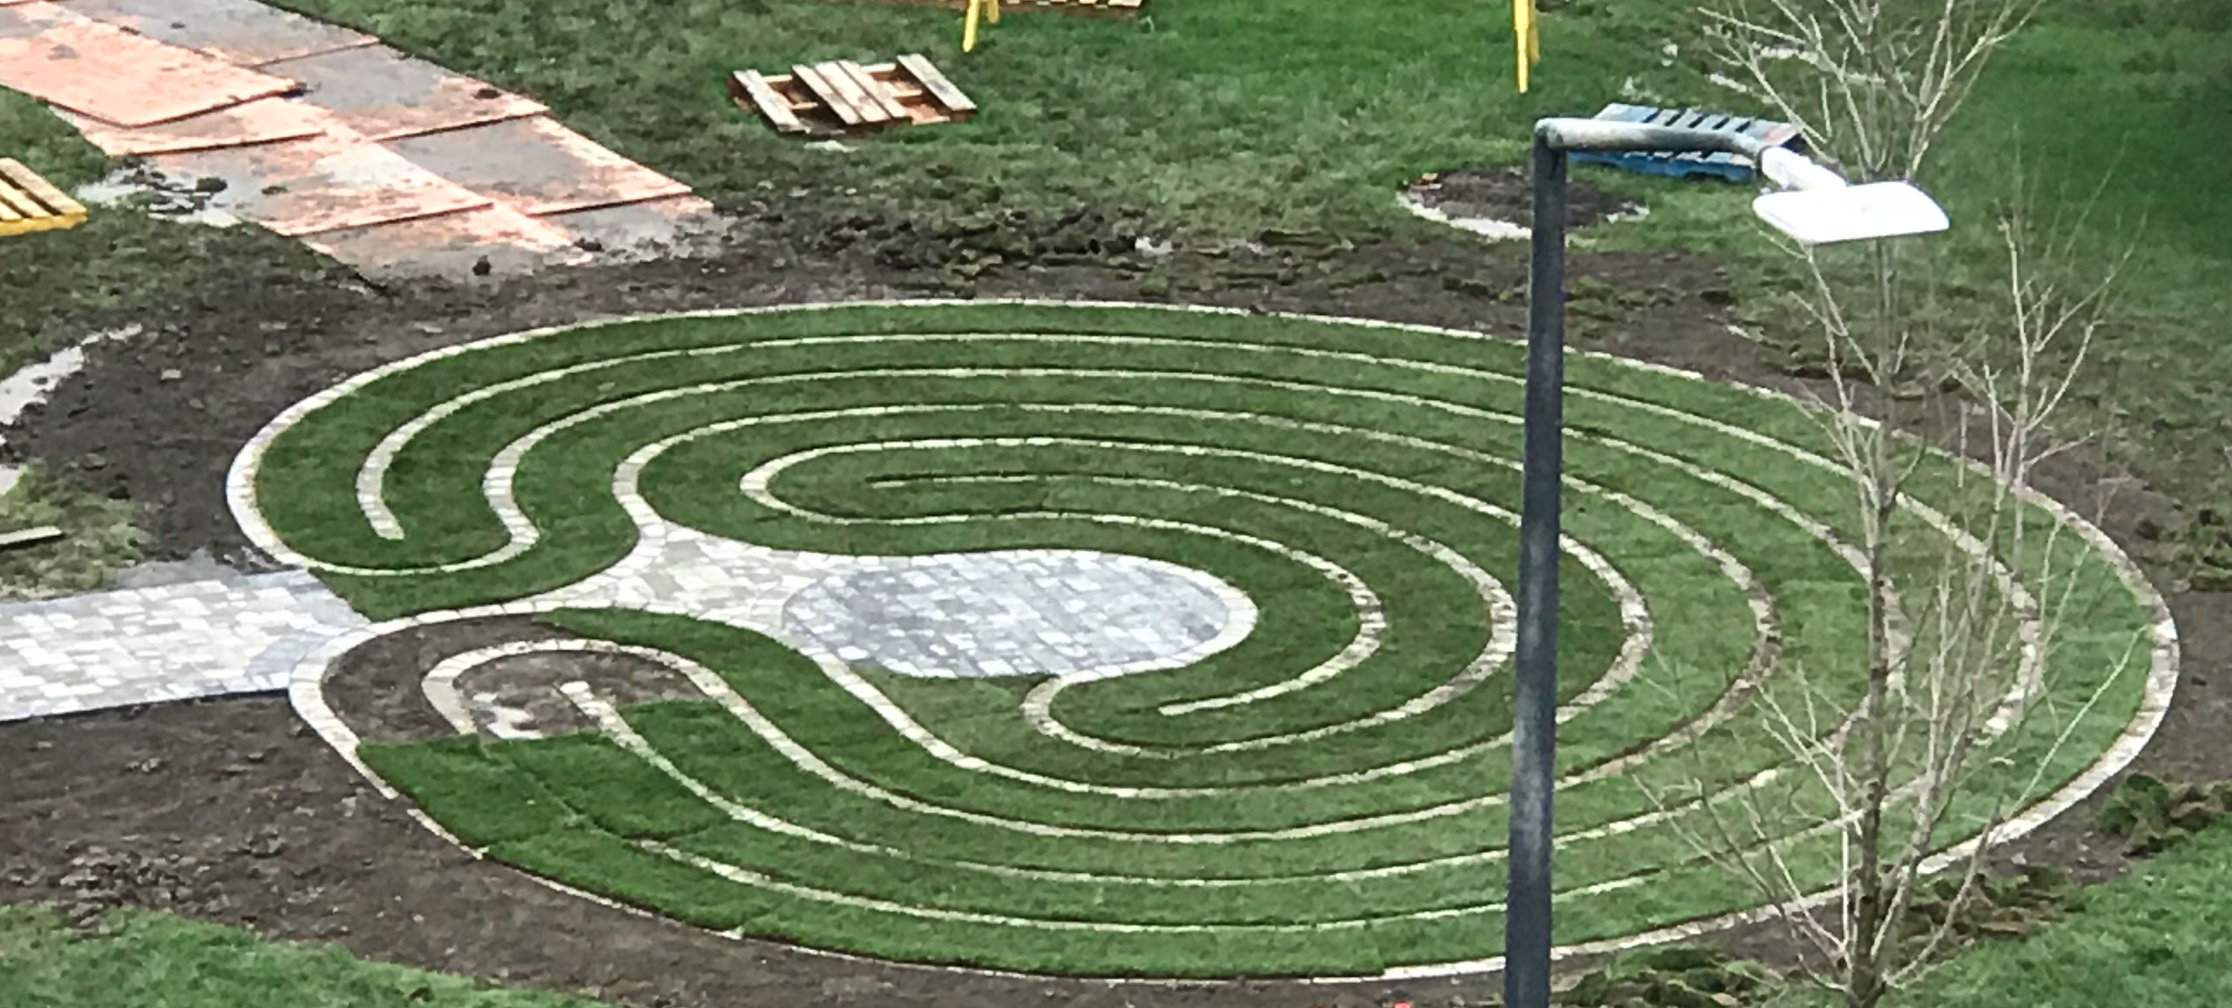 The Brock University Labyrinth